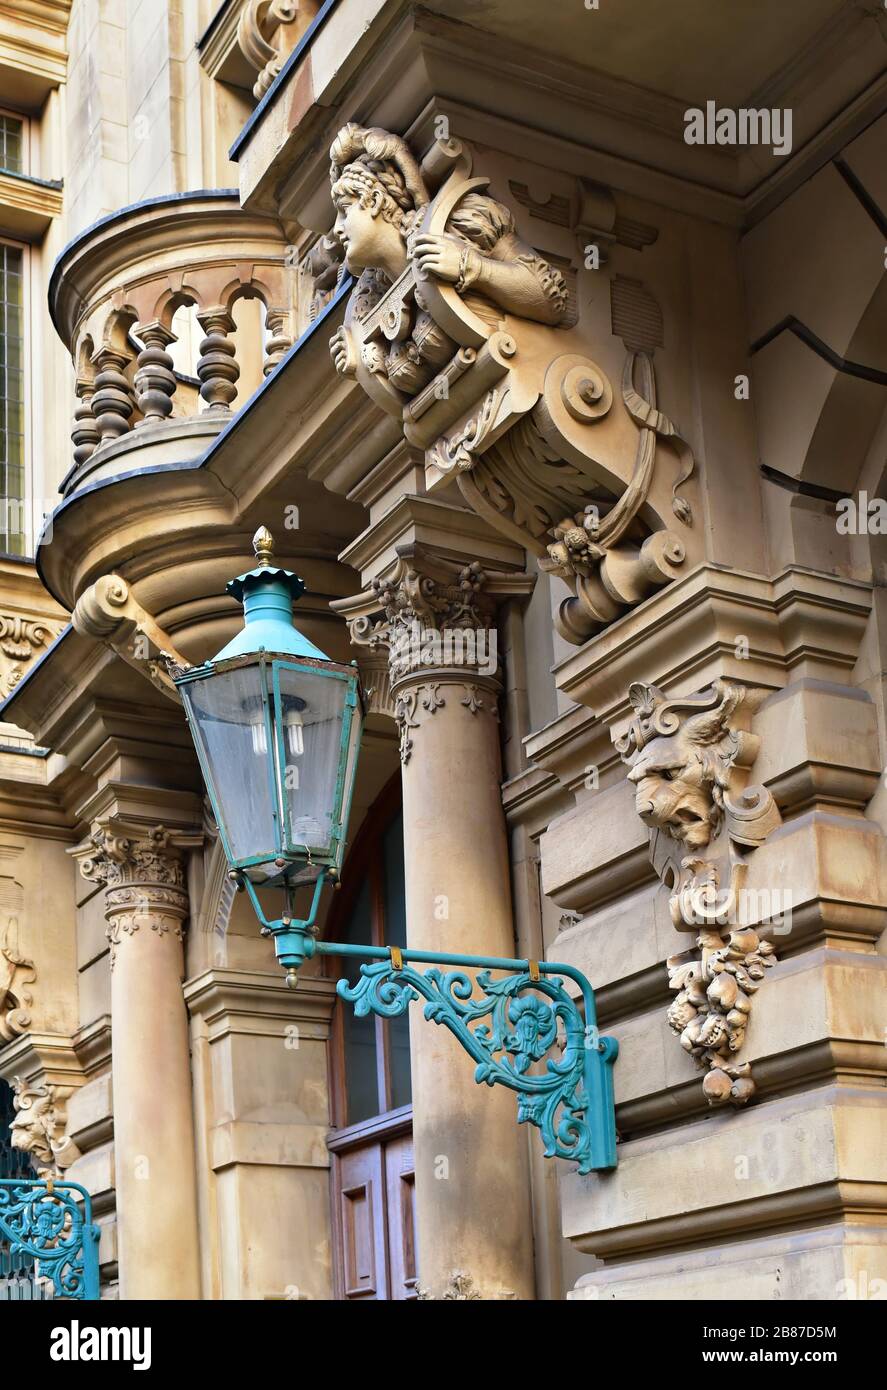 Détail d'une façade d'un vieux bâtiment à Düsseldorf, Allemagne, avec décoration chérib femelle et lanterne en métal turquoise devant. Banque D'Images